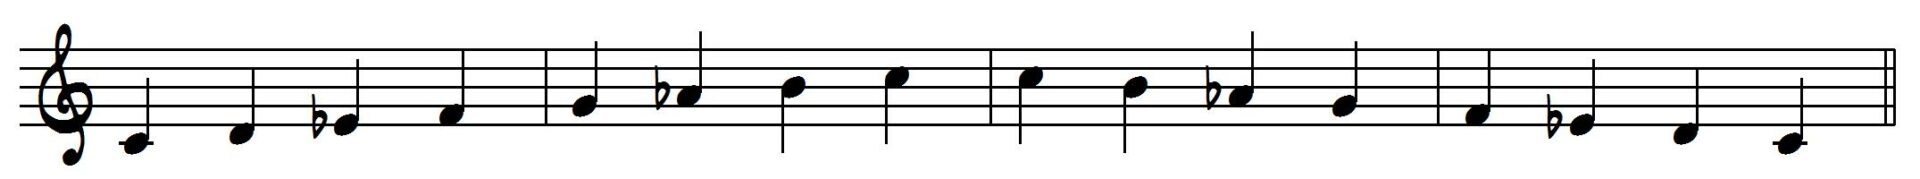 The Harmonic minor Scale